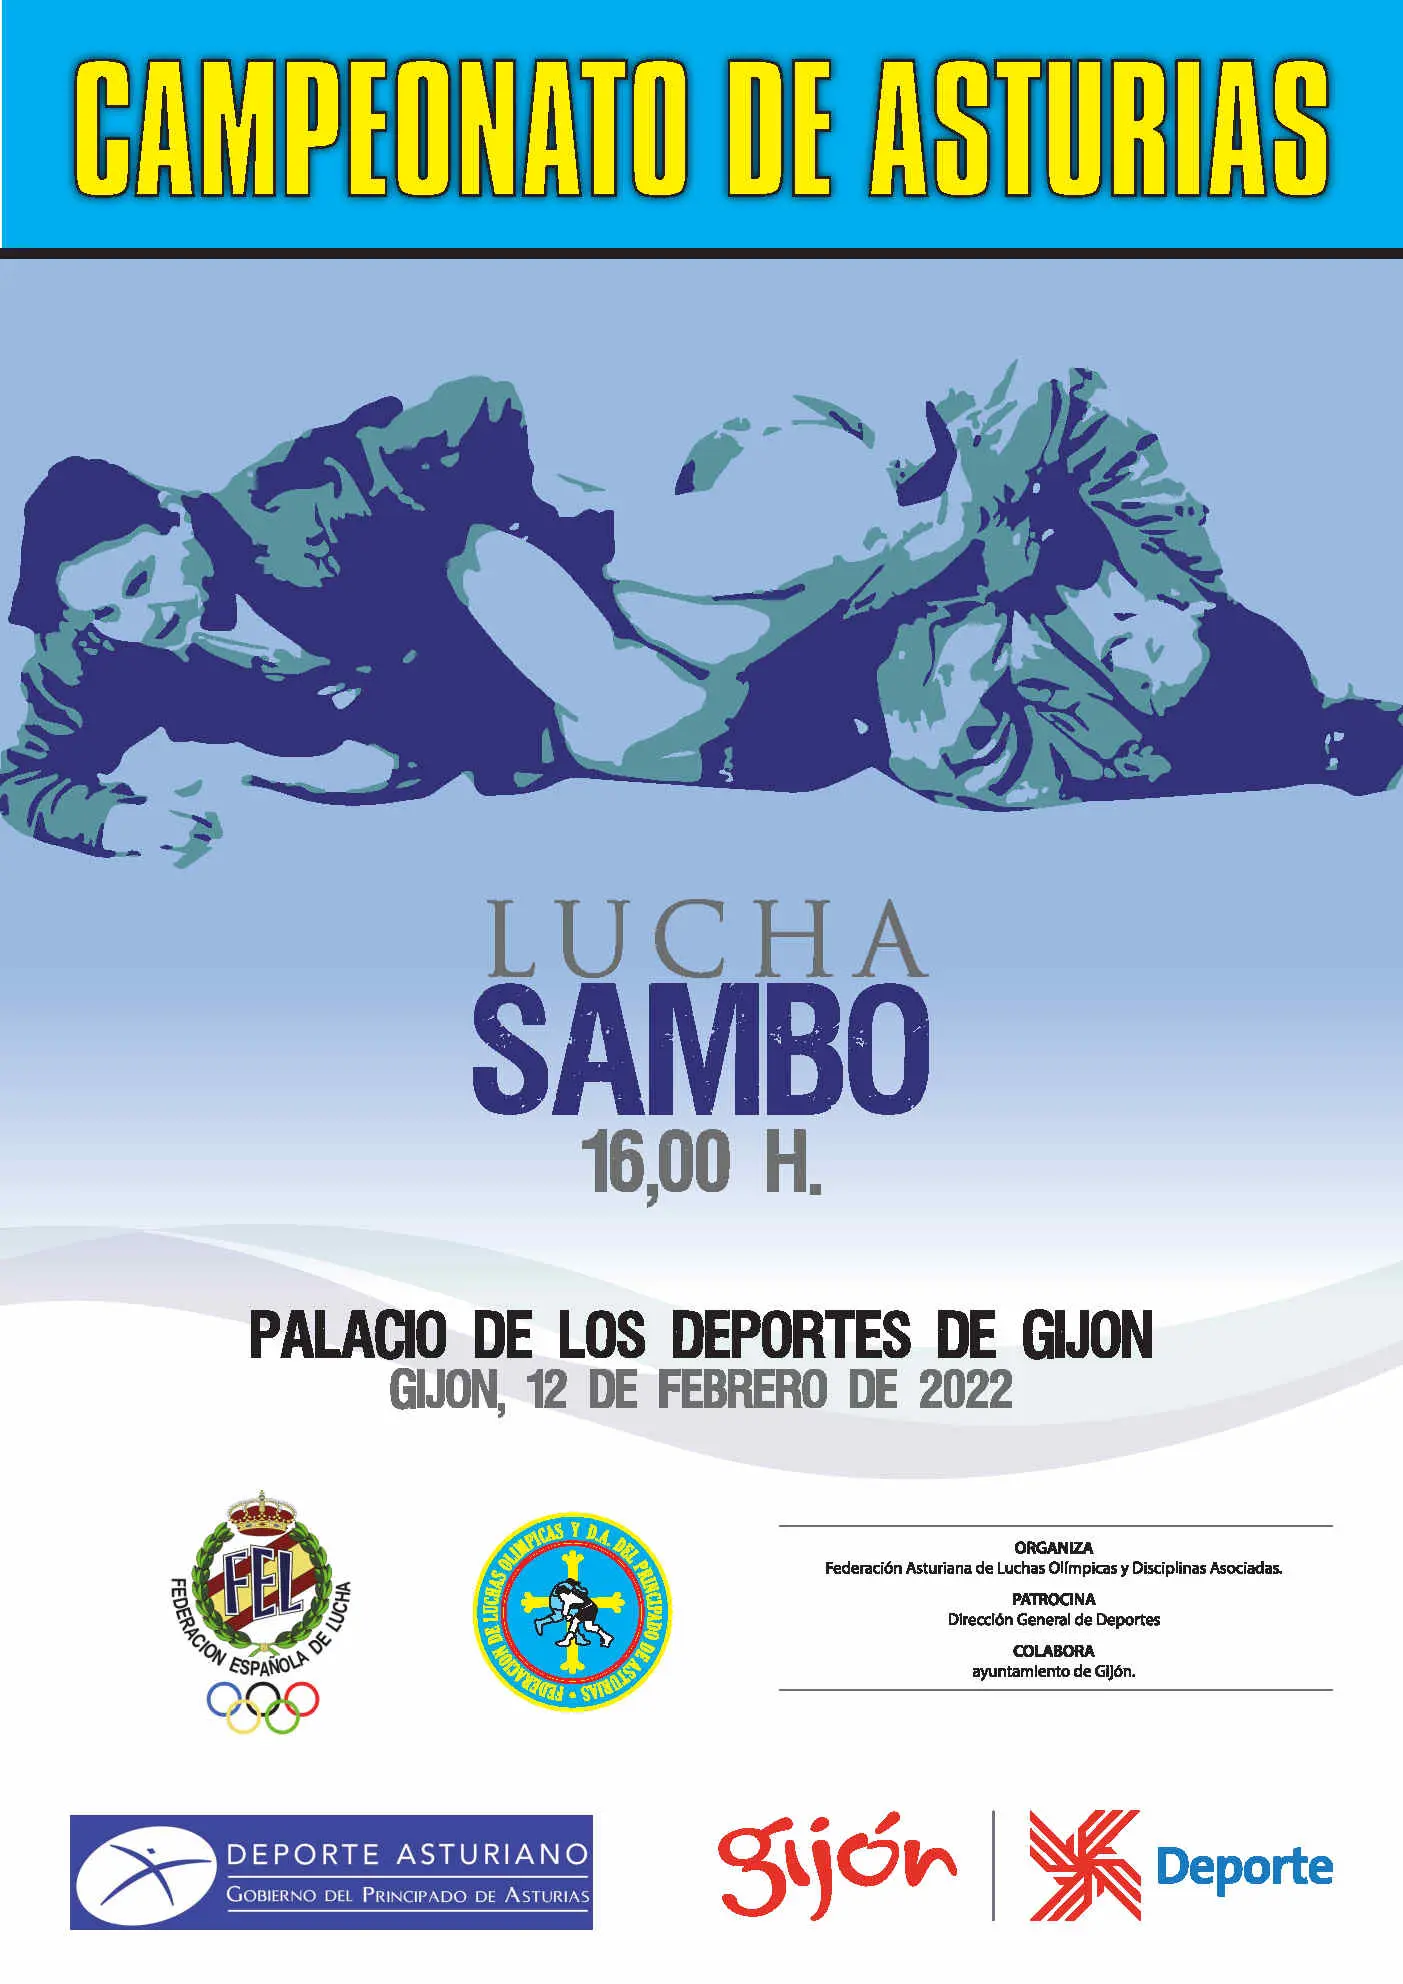 Campeonato Asturias Sambo 2022